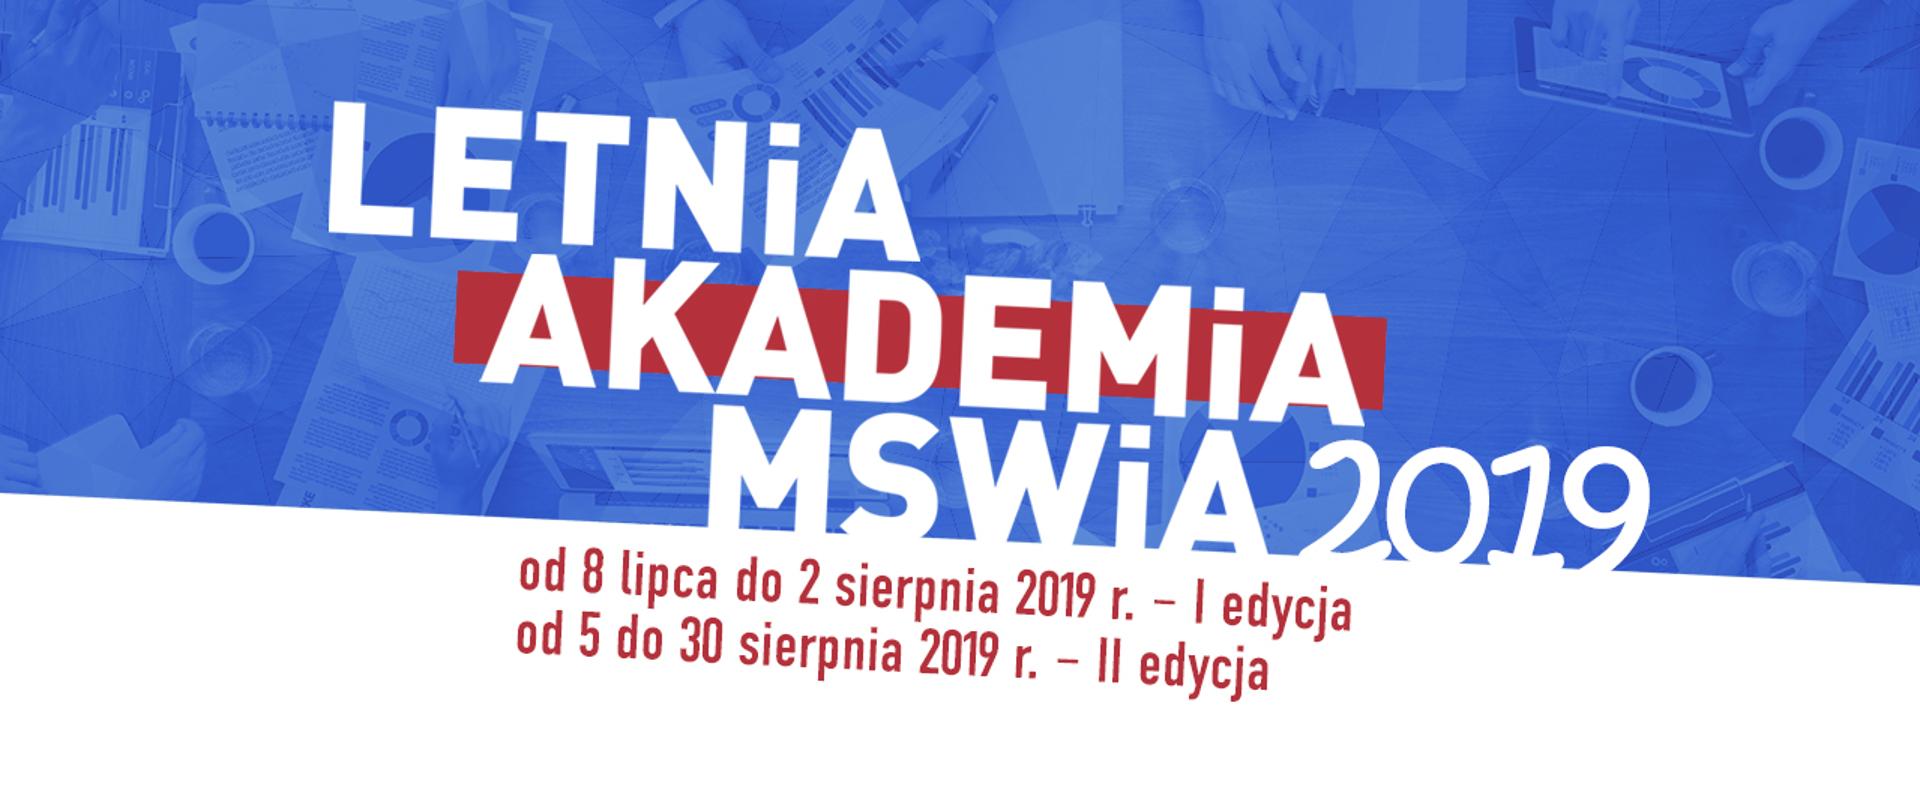 Letnia Akademia MSWiA 2019